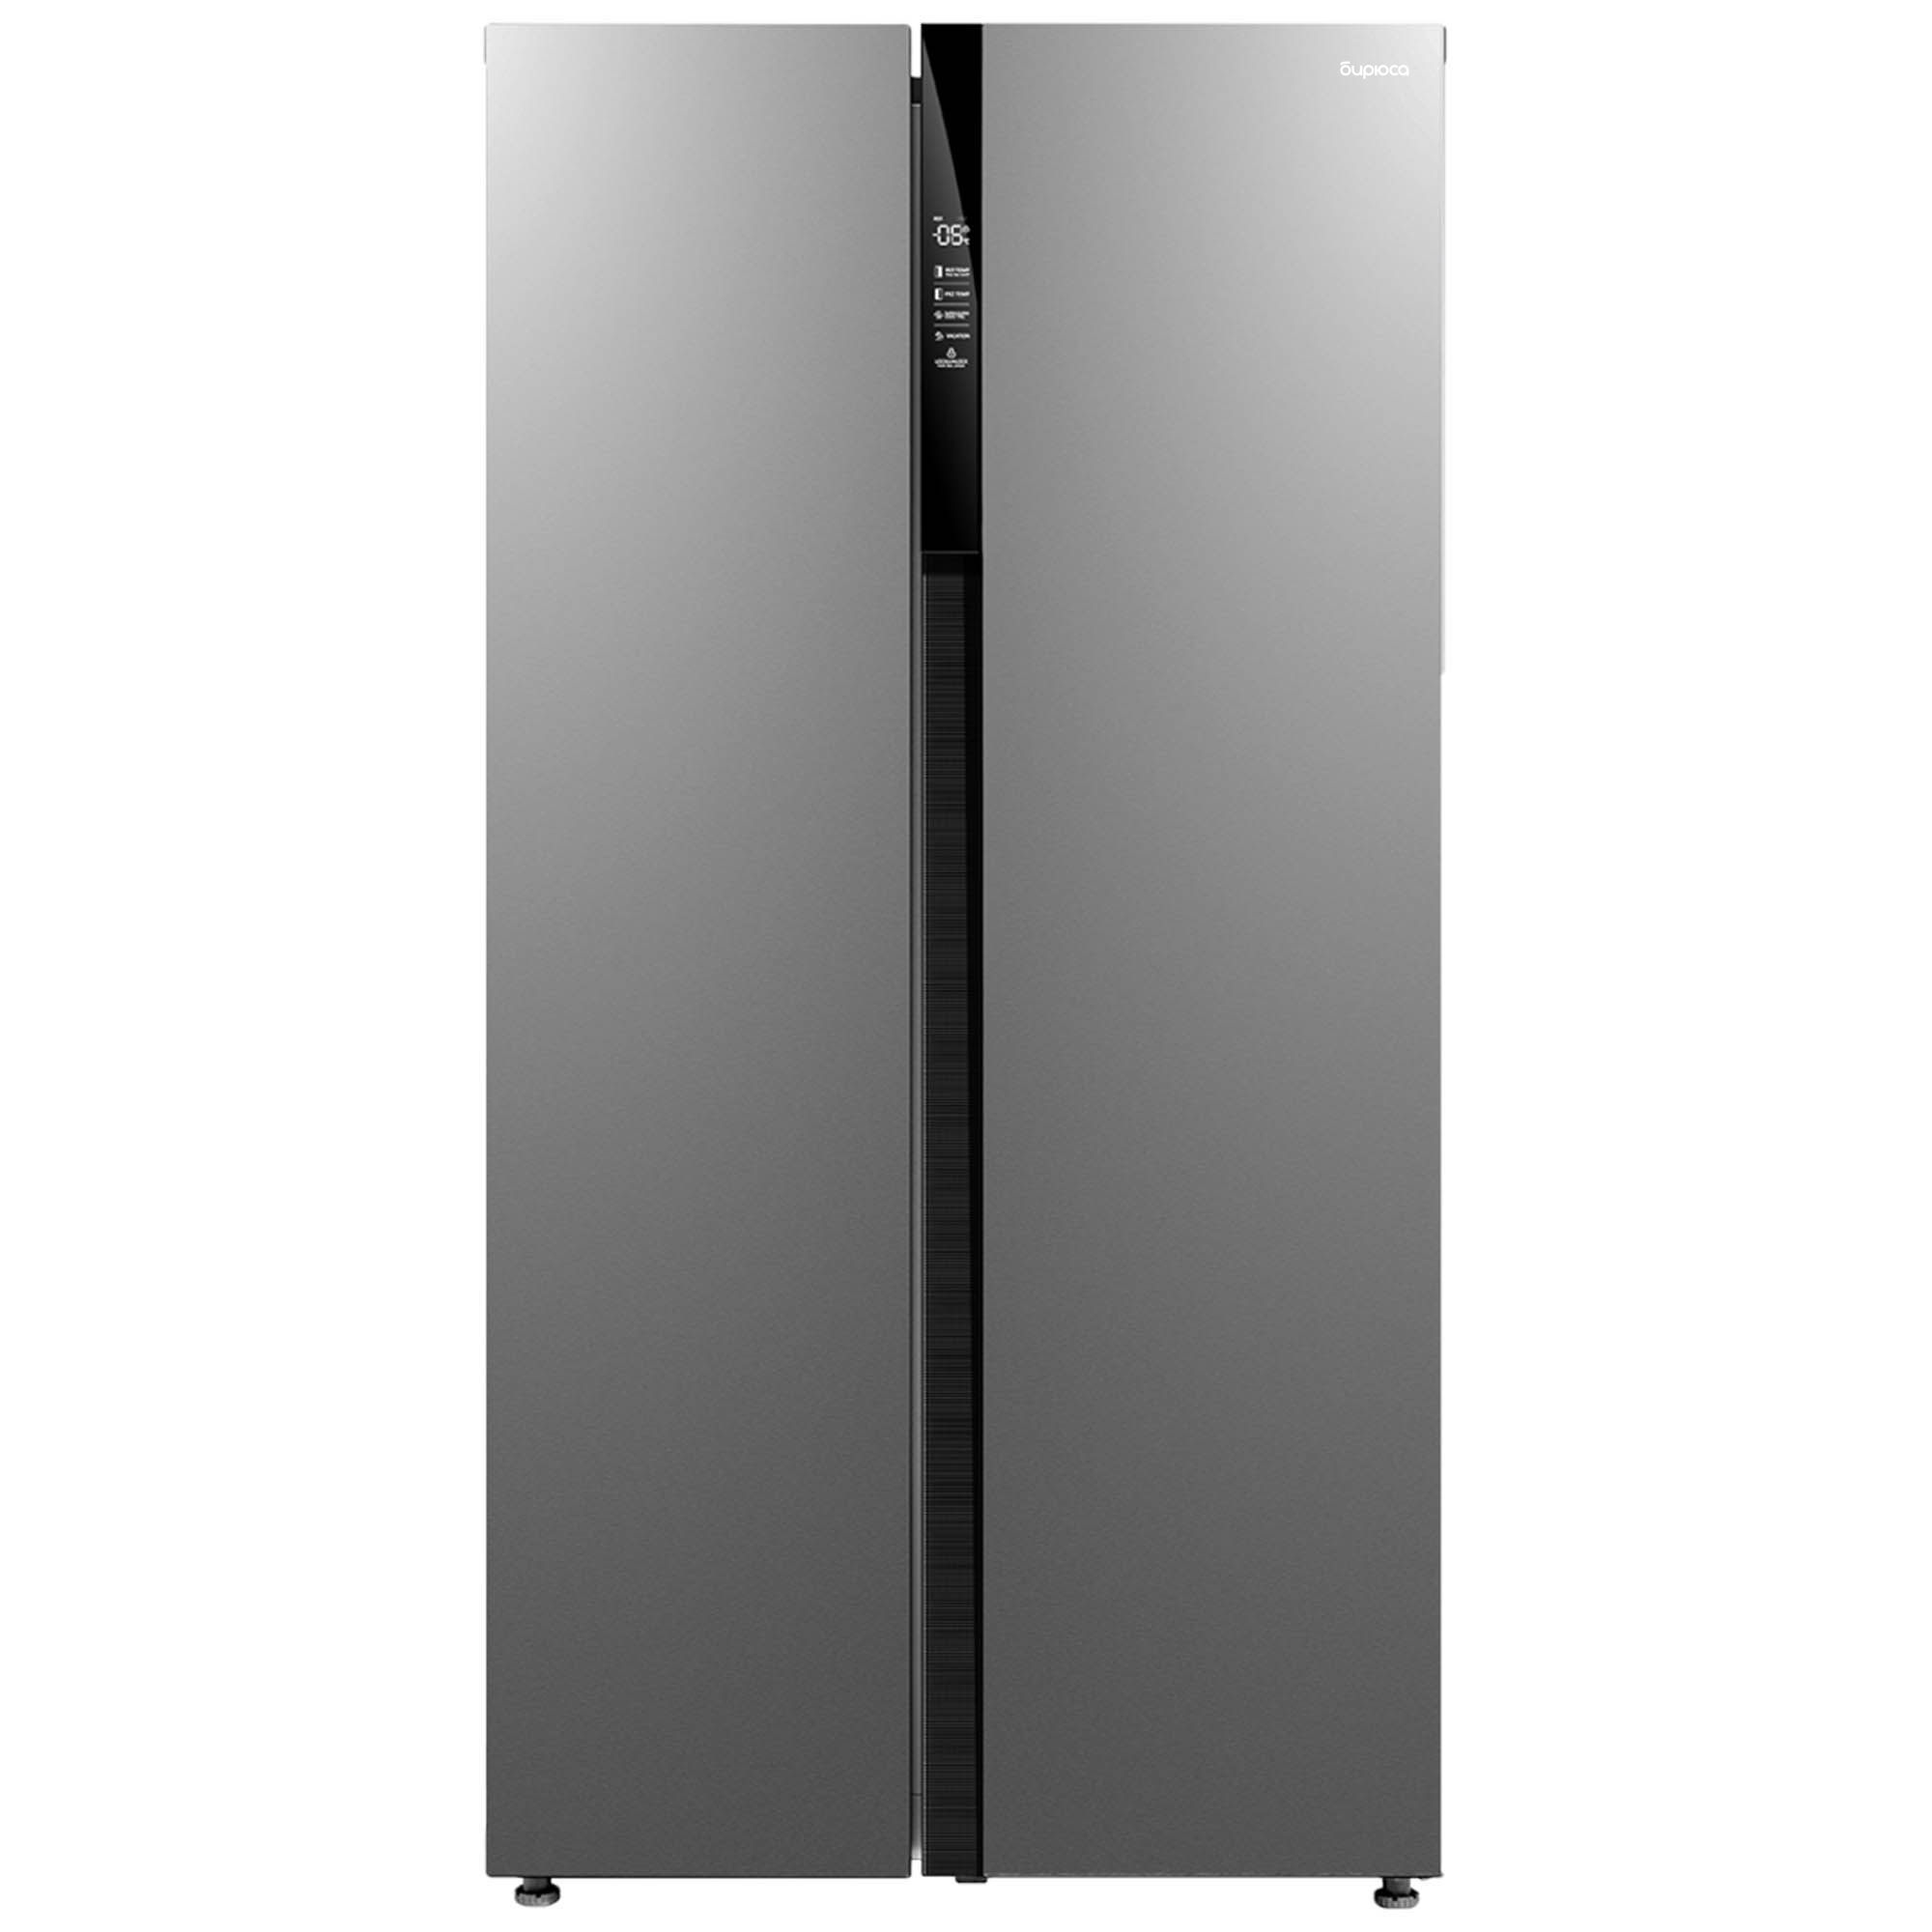 Холодильник Бирюса SBS 587 I серый